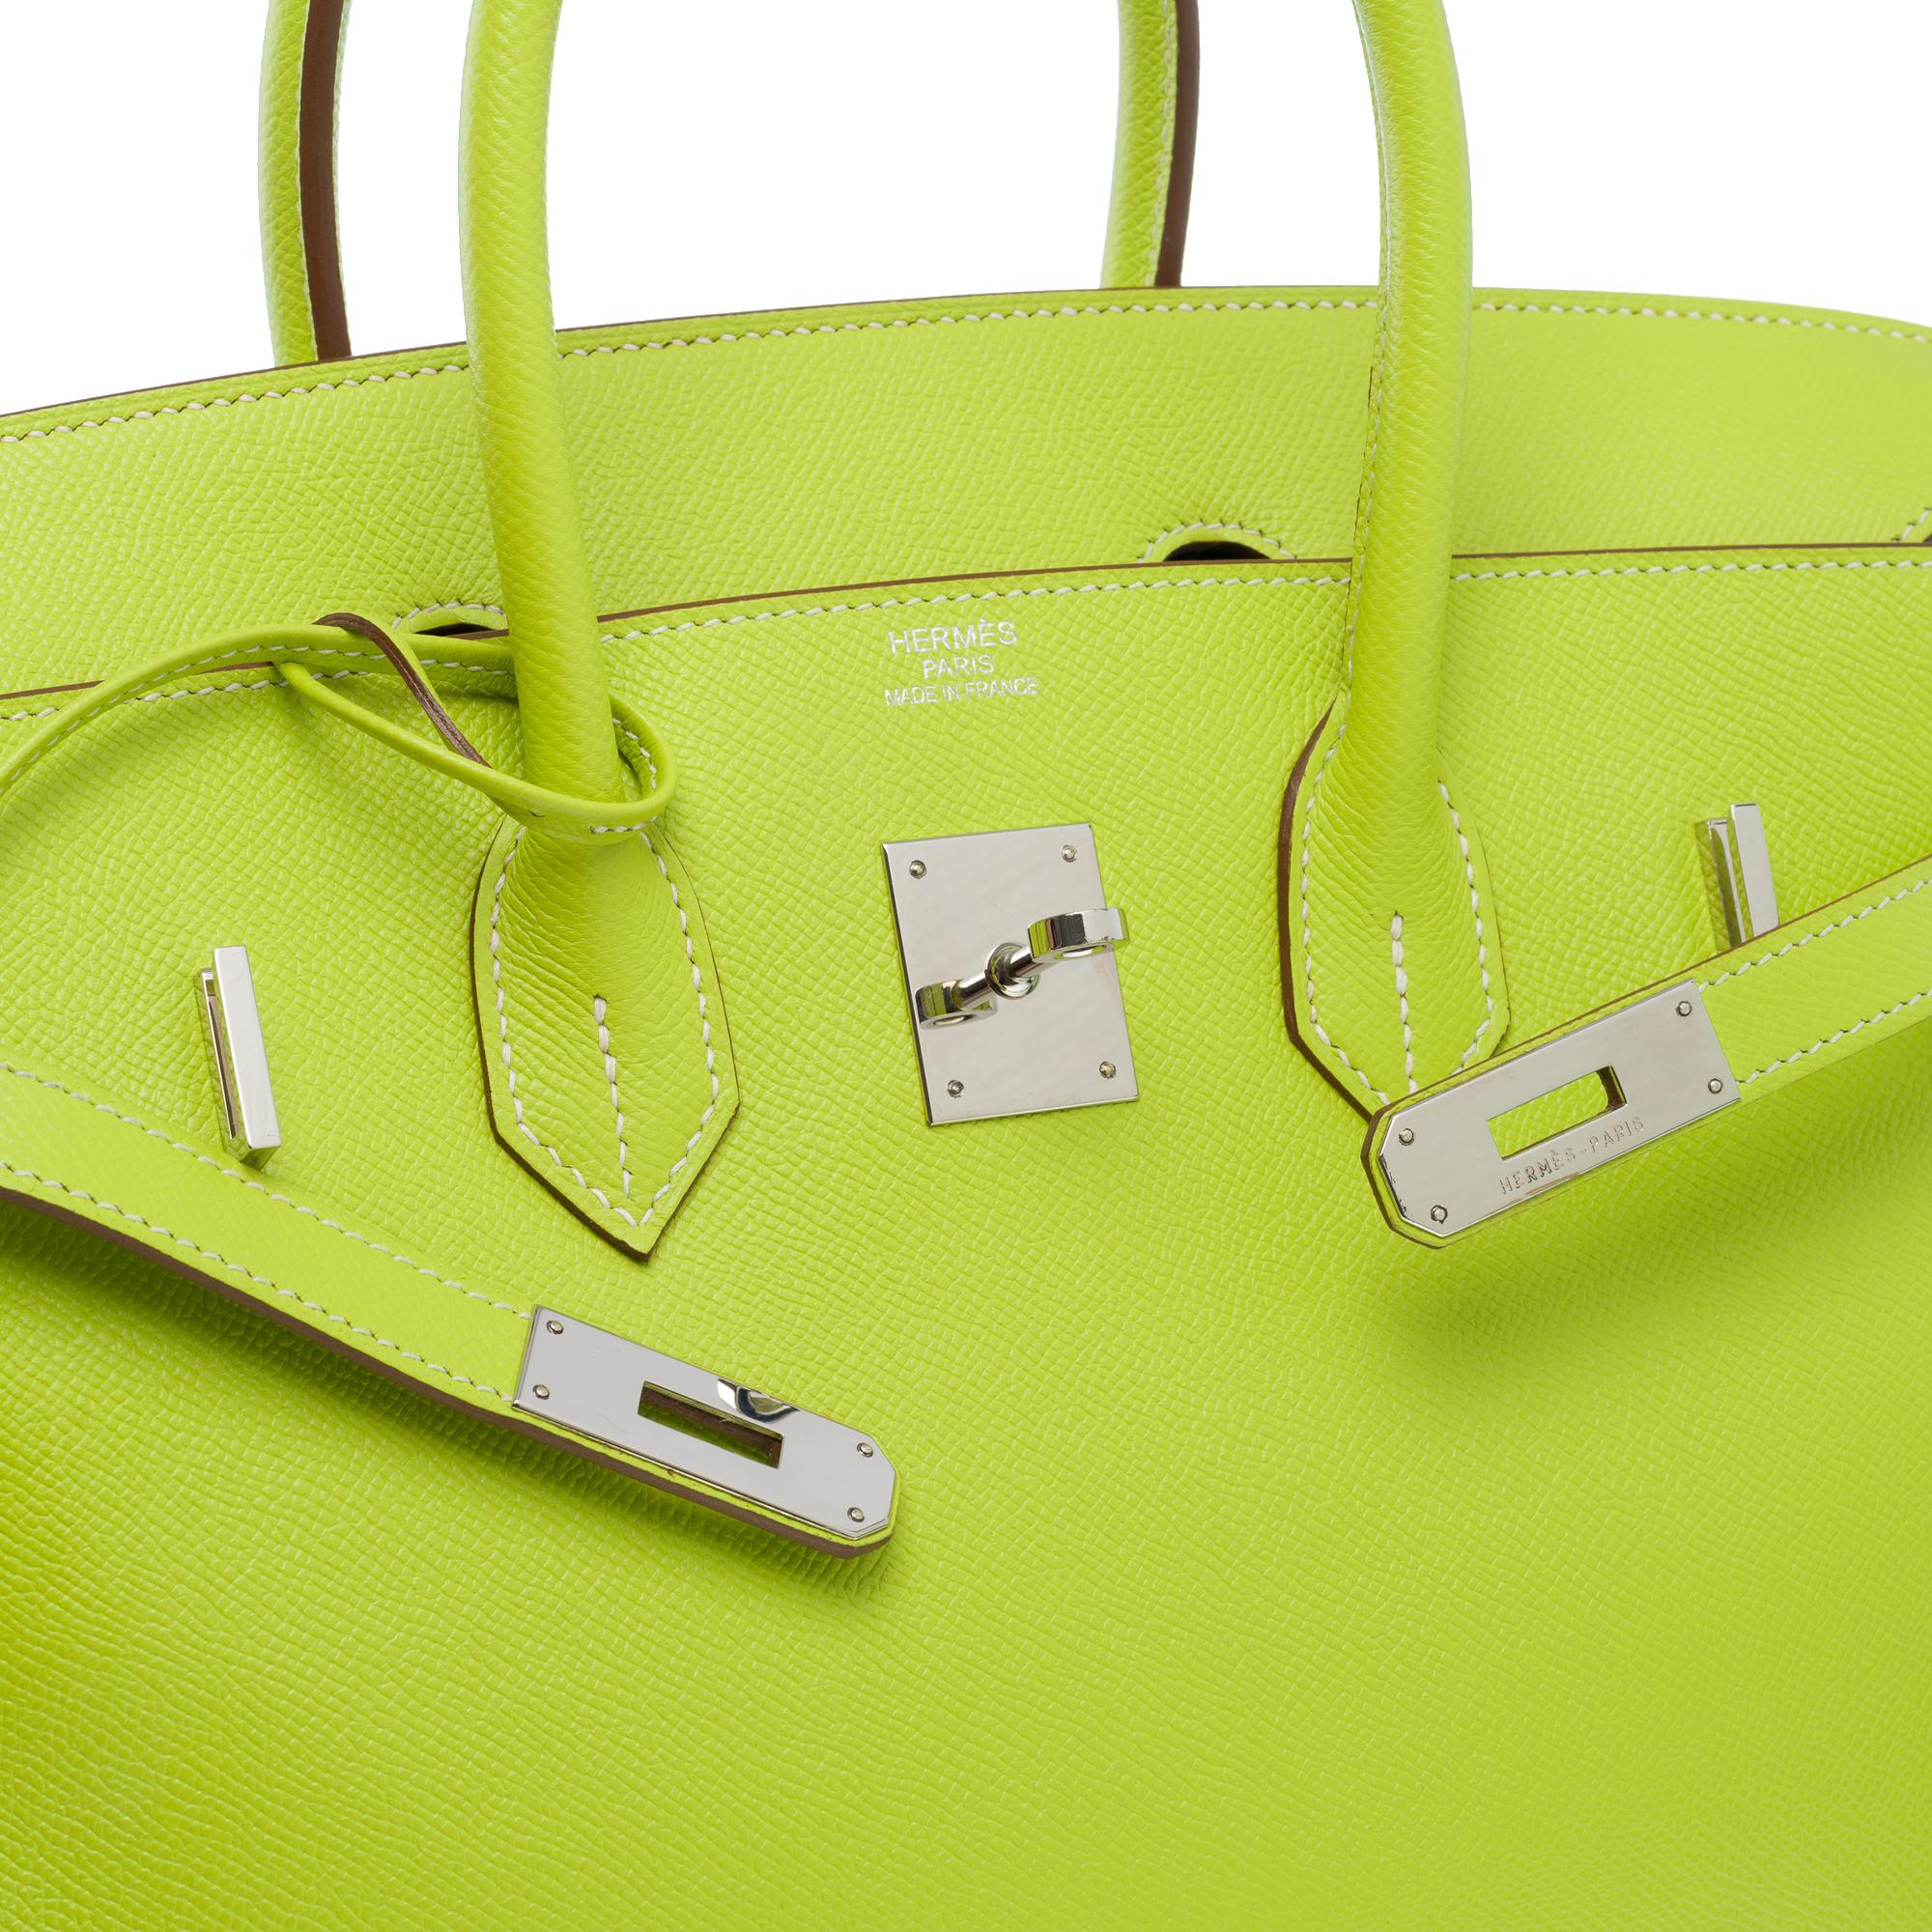 Candy limited edition Hermès Birkin 35 handbag in Kiwi Green epsom leather, SHW 2